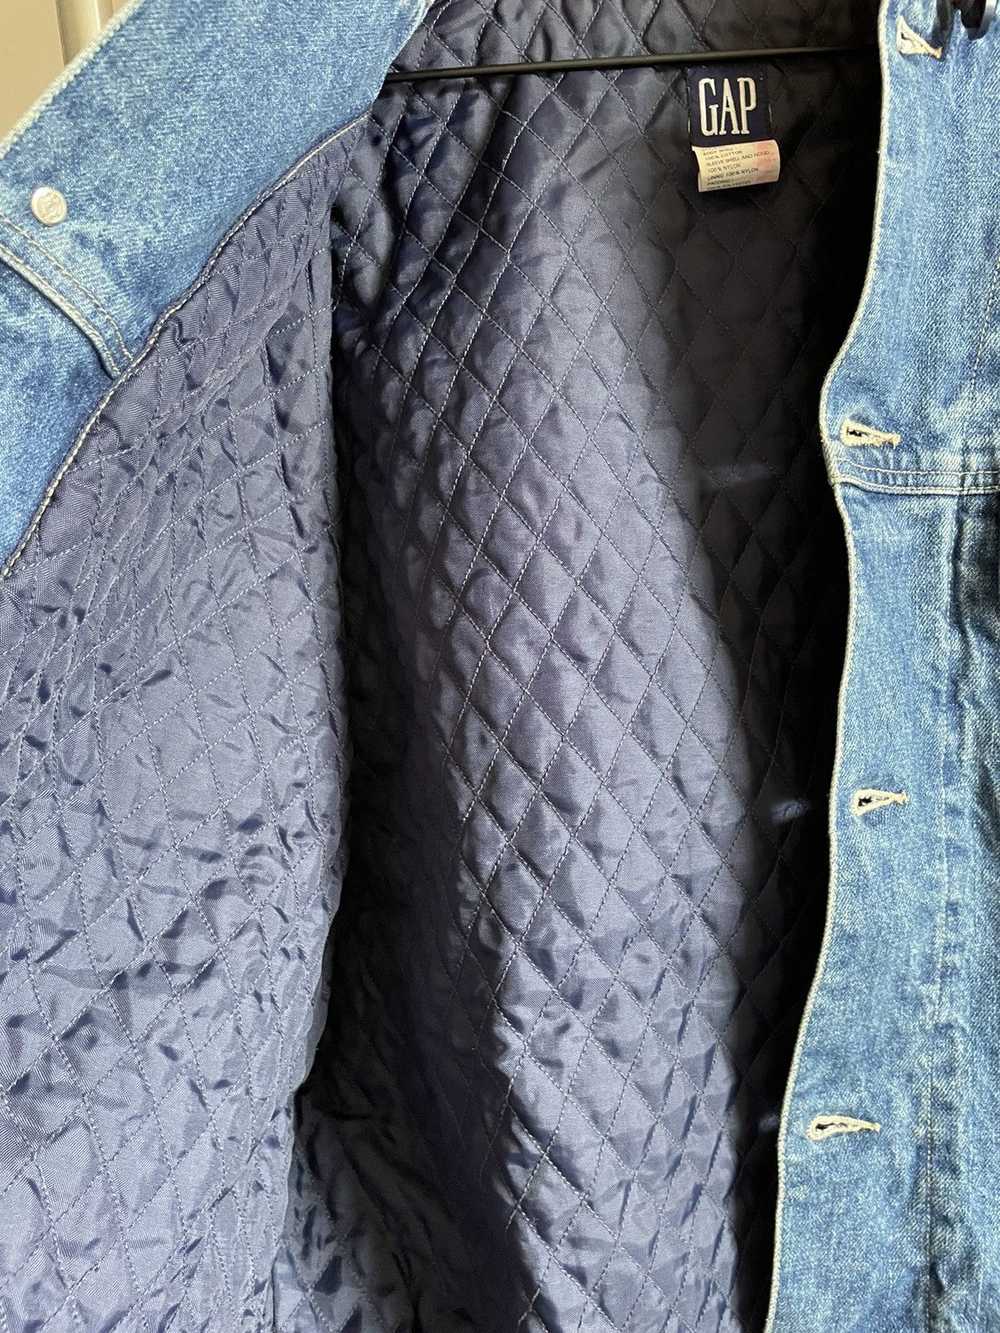 Gap × Vintage Gap Denim Jacket worn by Drake - image 6